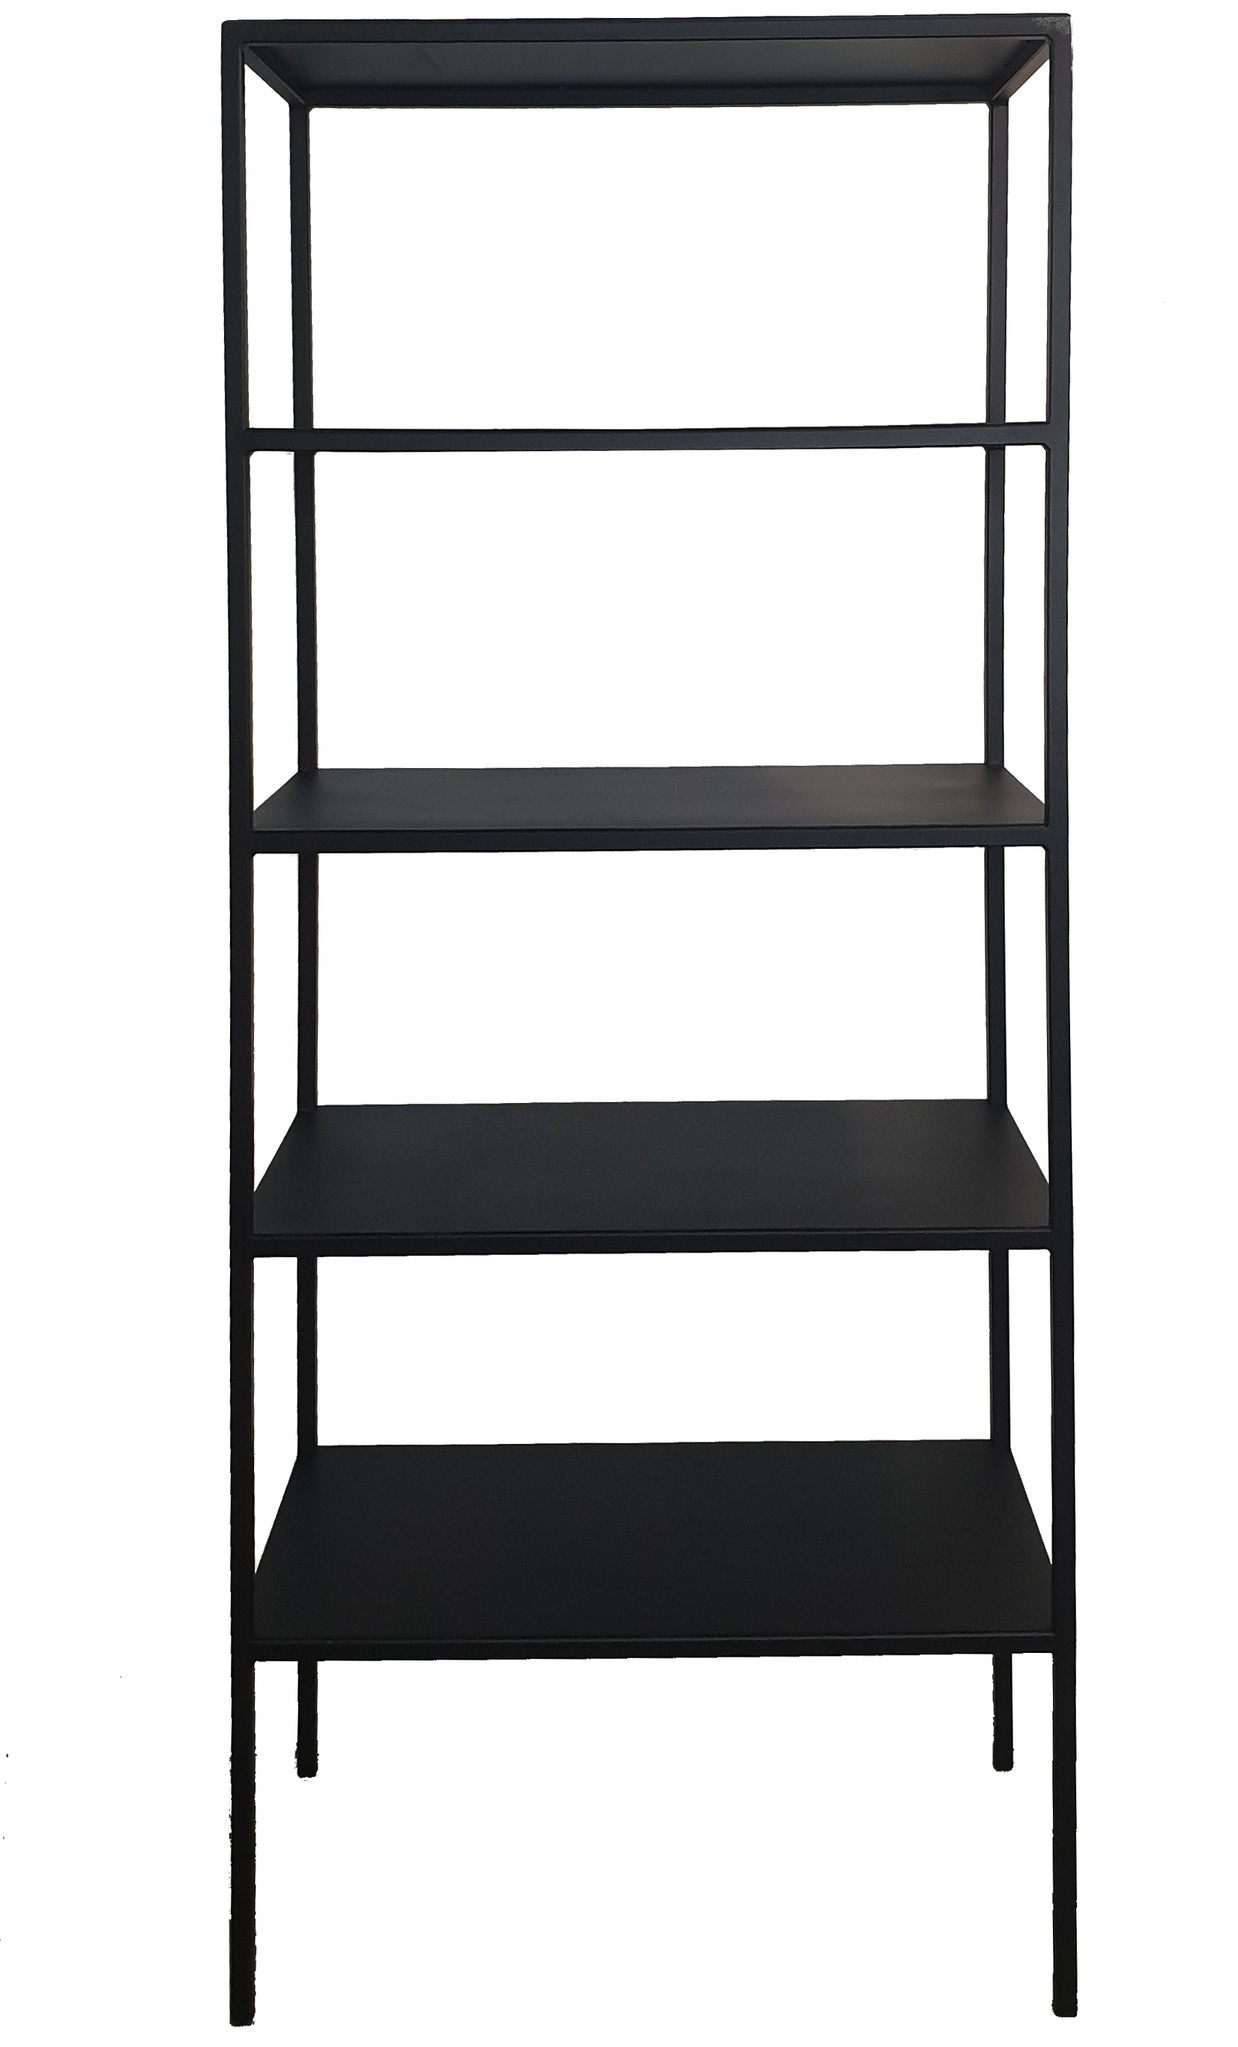 Stoer Metaal metal rack cabinet Tar, black